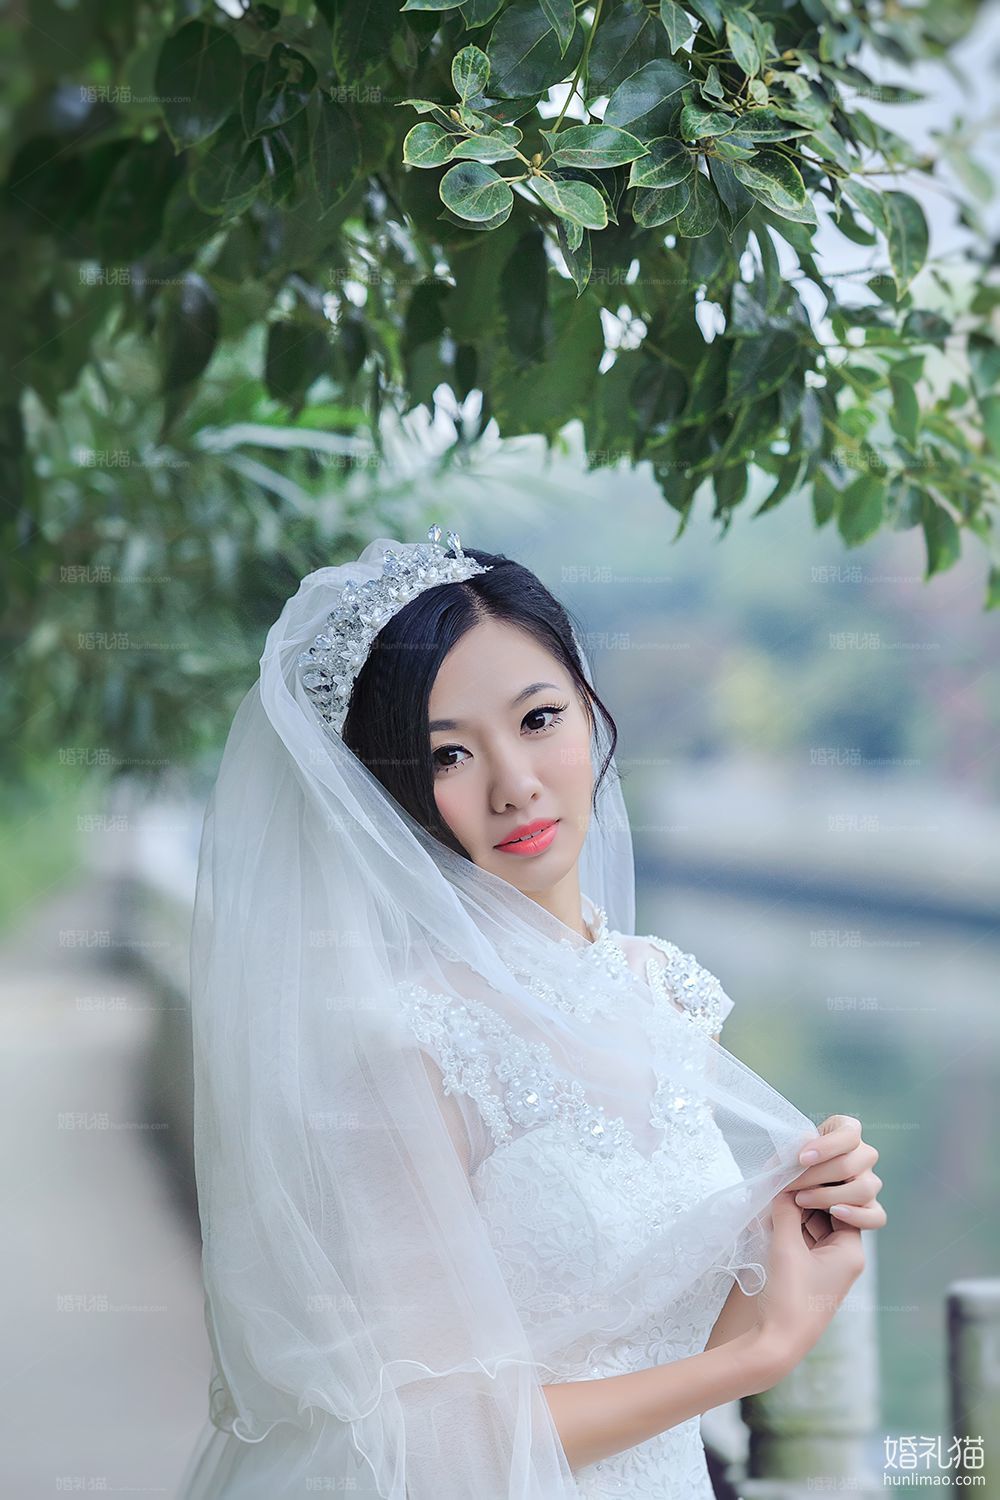 2017年8月广州结婚照,,清远婚纱照,婚纱照图片